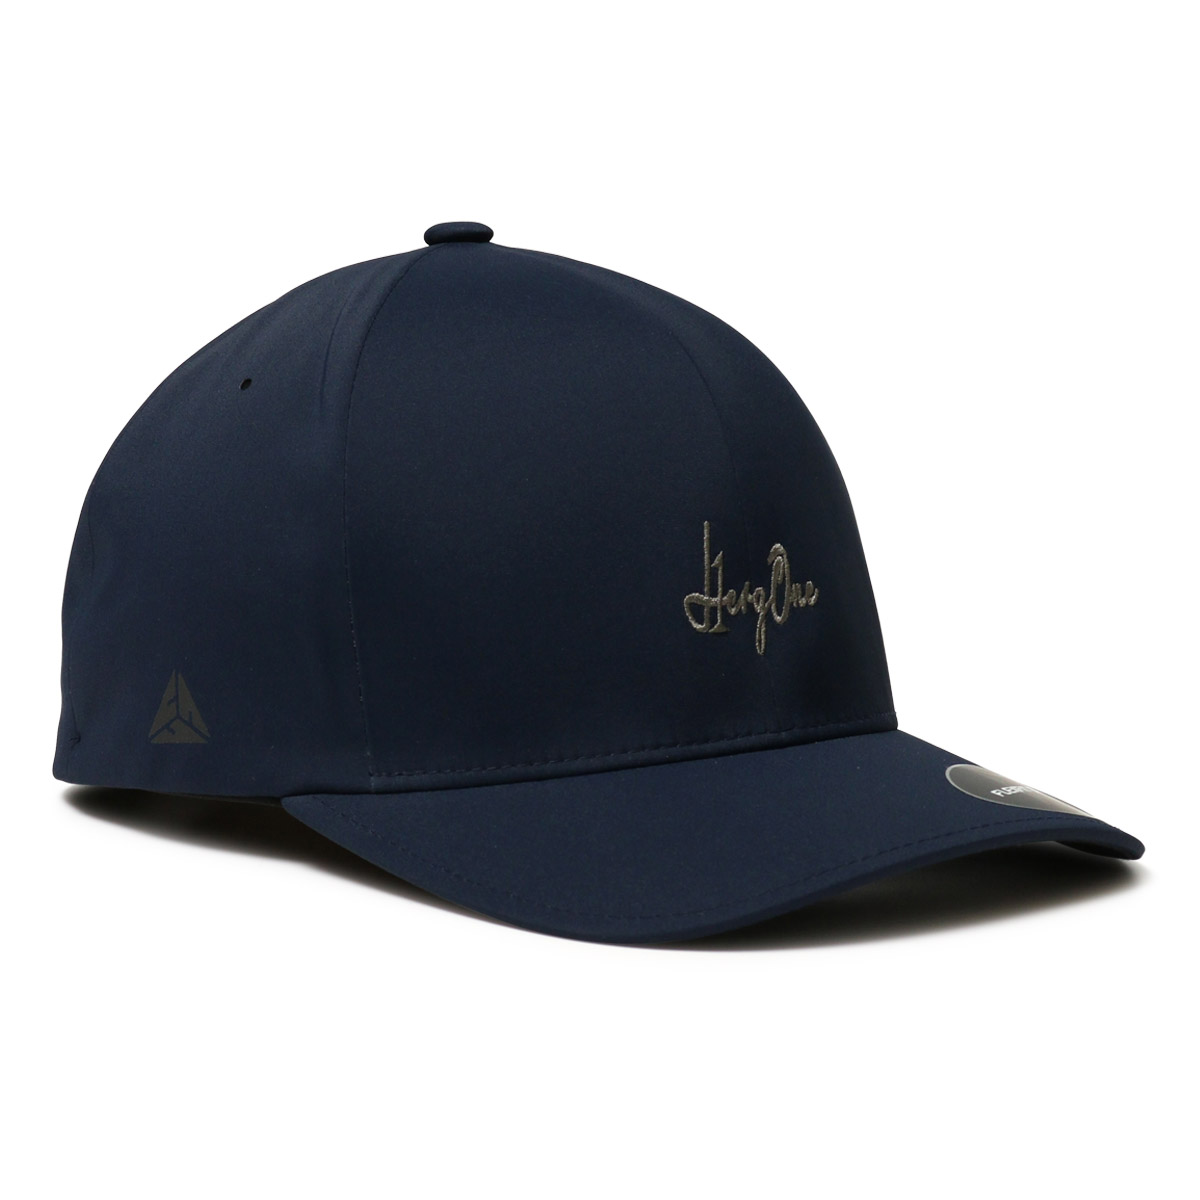 エルグワン ゴルフ キャップ 帽子 メンズ AU225103 HERG1 | スポーツ サイズ調節可...